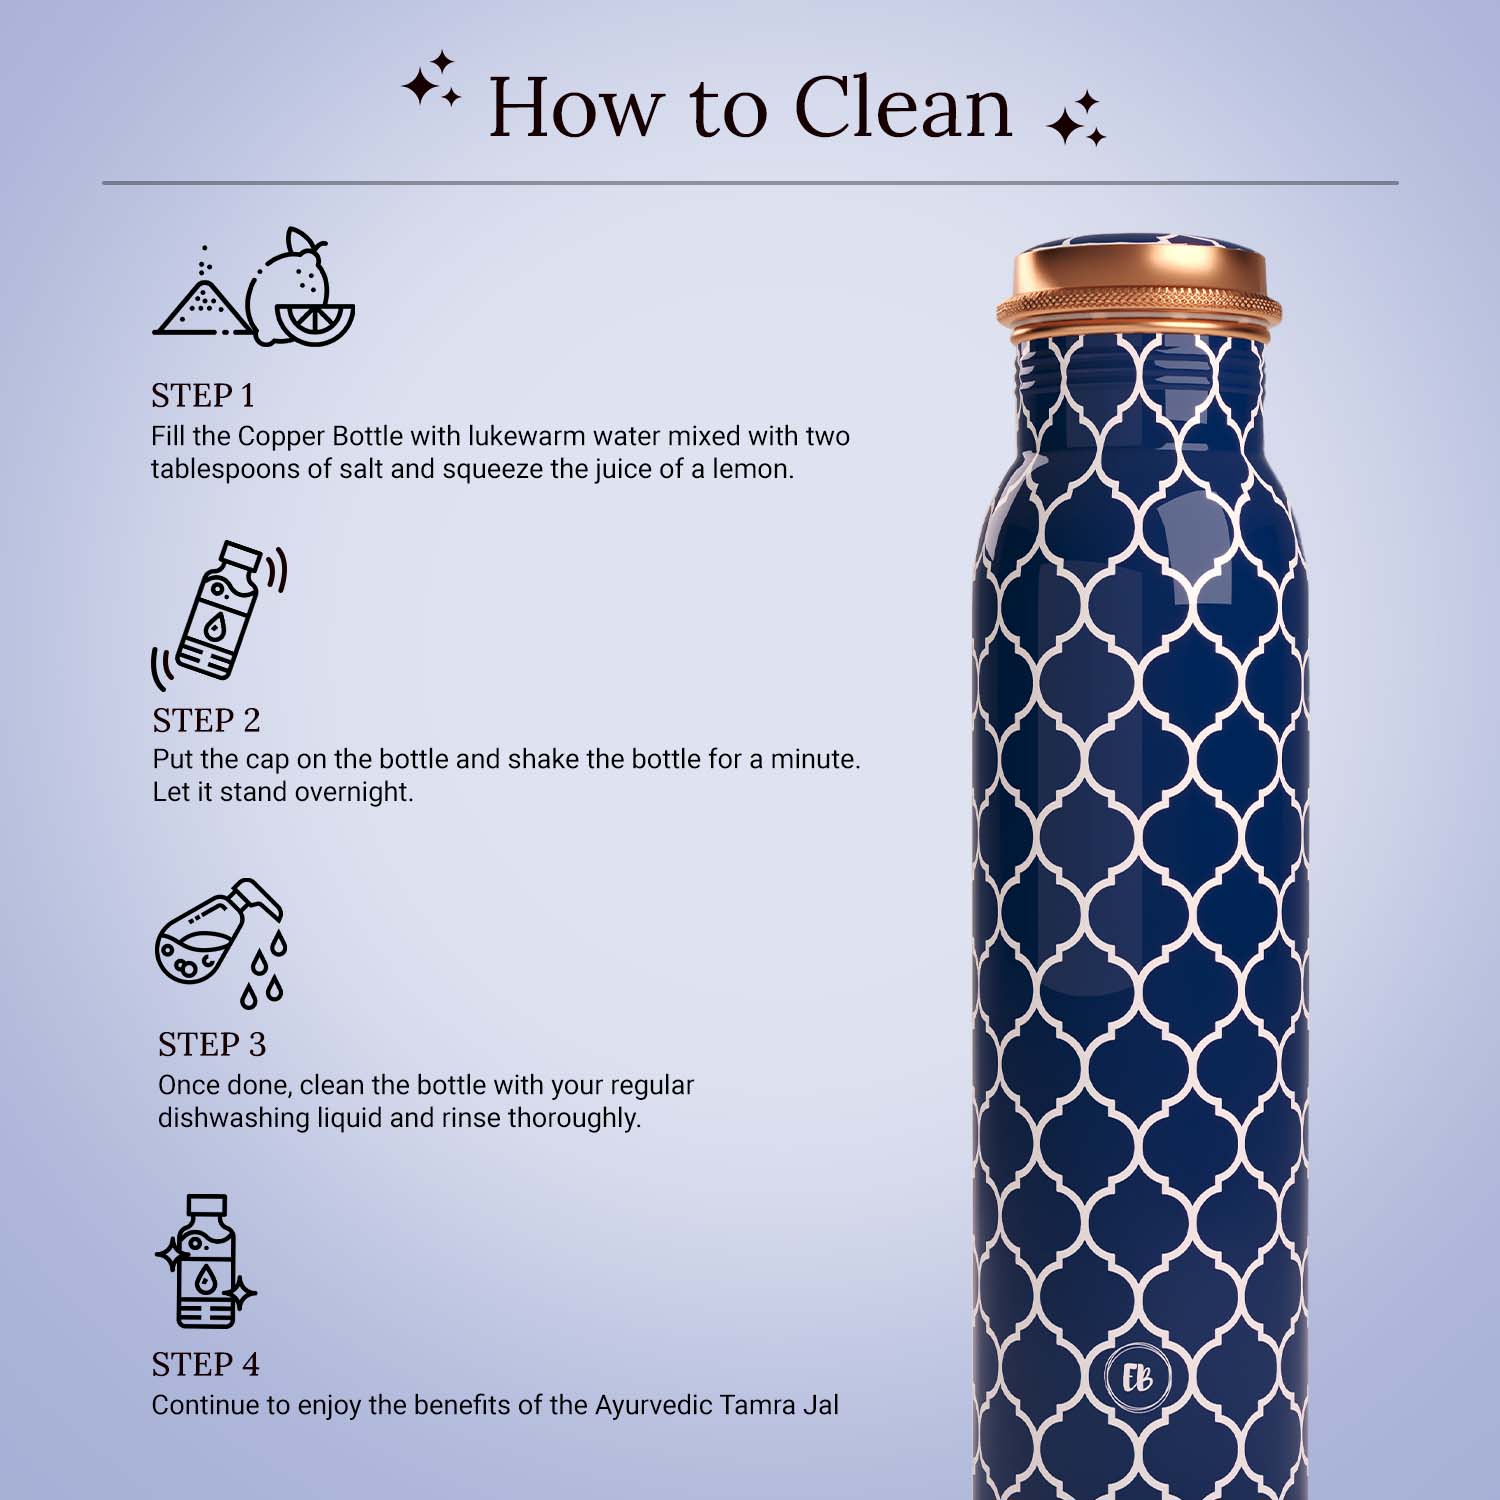 blue white moroccan design copper bottle copper water bottle 1 litre printed copper bottle benefits of copper water #color_blue white moroccan